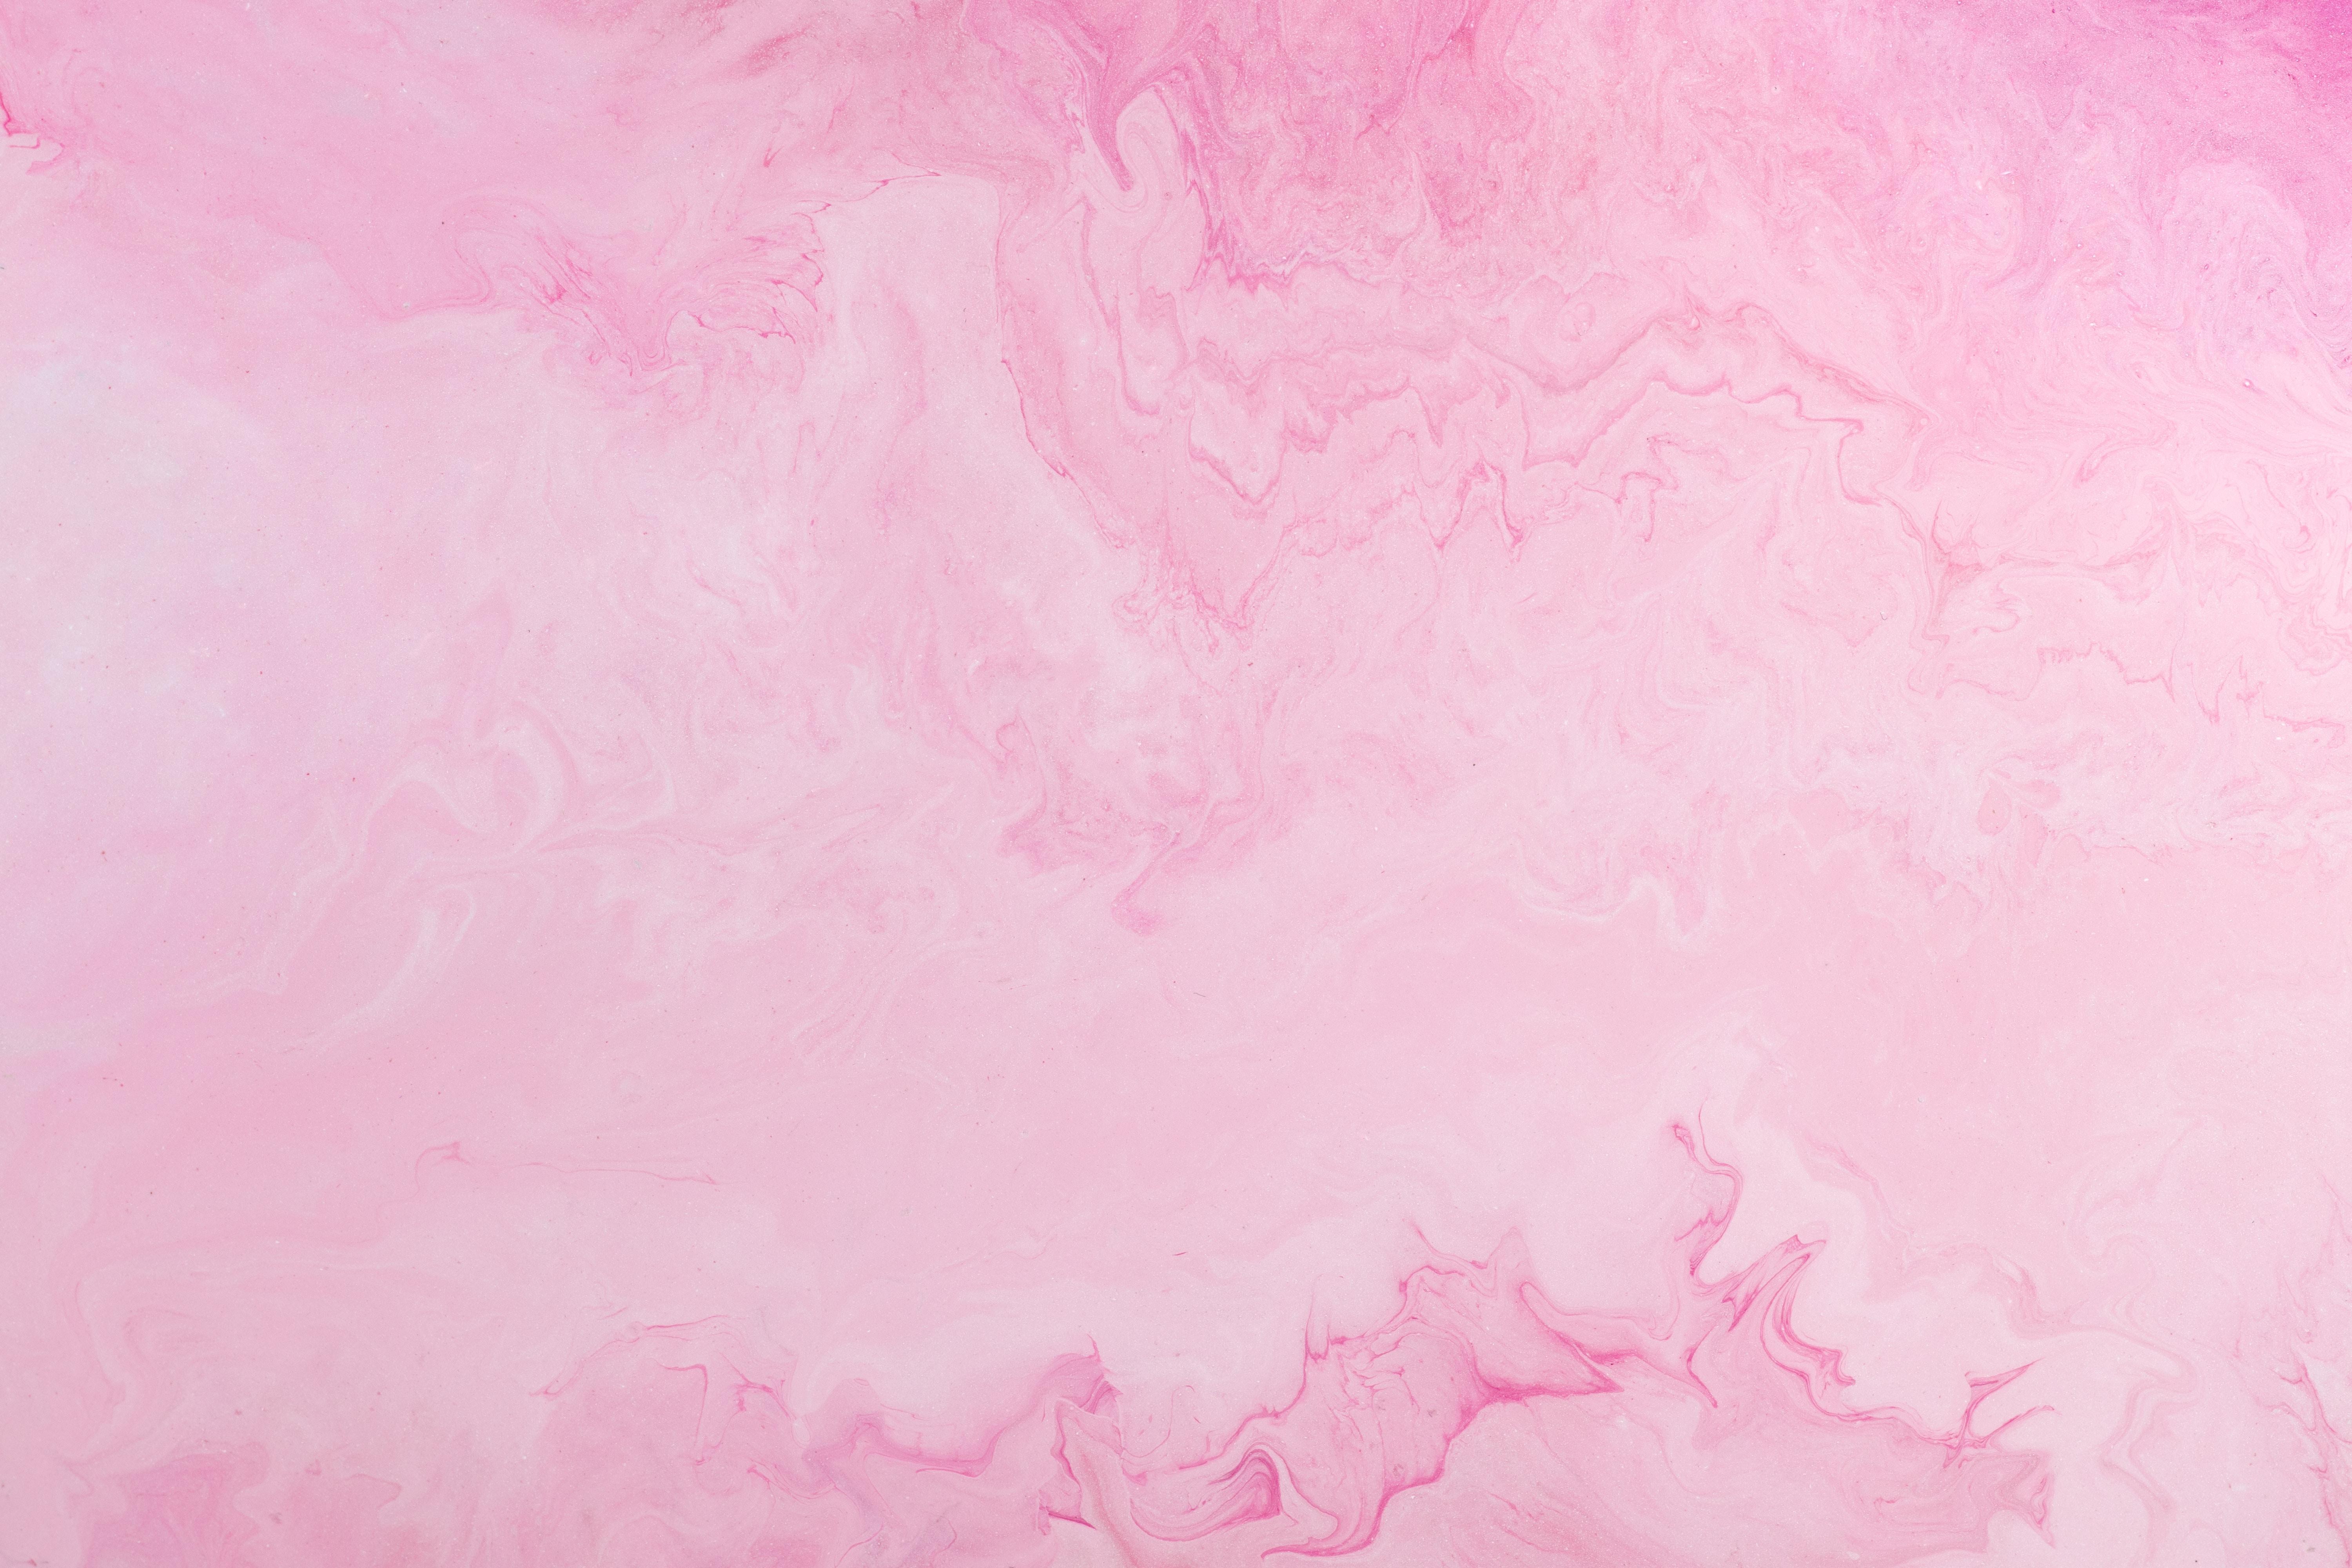 Những gam màu pastel luôn là một lựa chọn tuyệt vời cho những người yêu thích sự nhẹ nhàng và tinh tế! Hãy sử dụng ngay những mẫu hình nền máy tính màu hồng pastel miễn phí của chúng tôi để mang đến không gian làm việc tràn ngập cảm hứng!